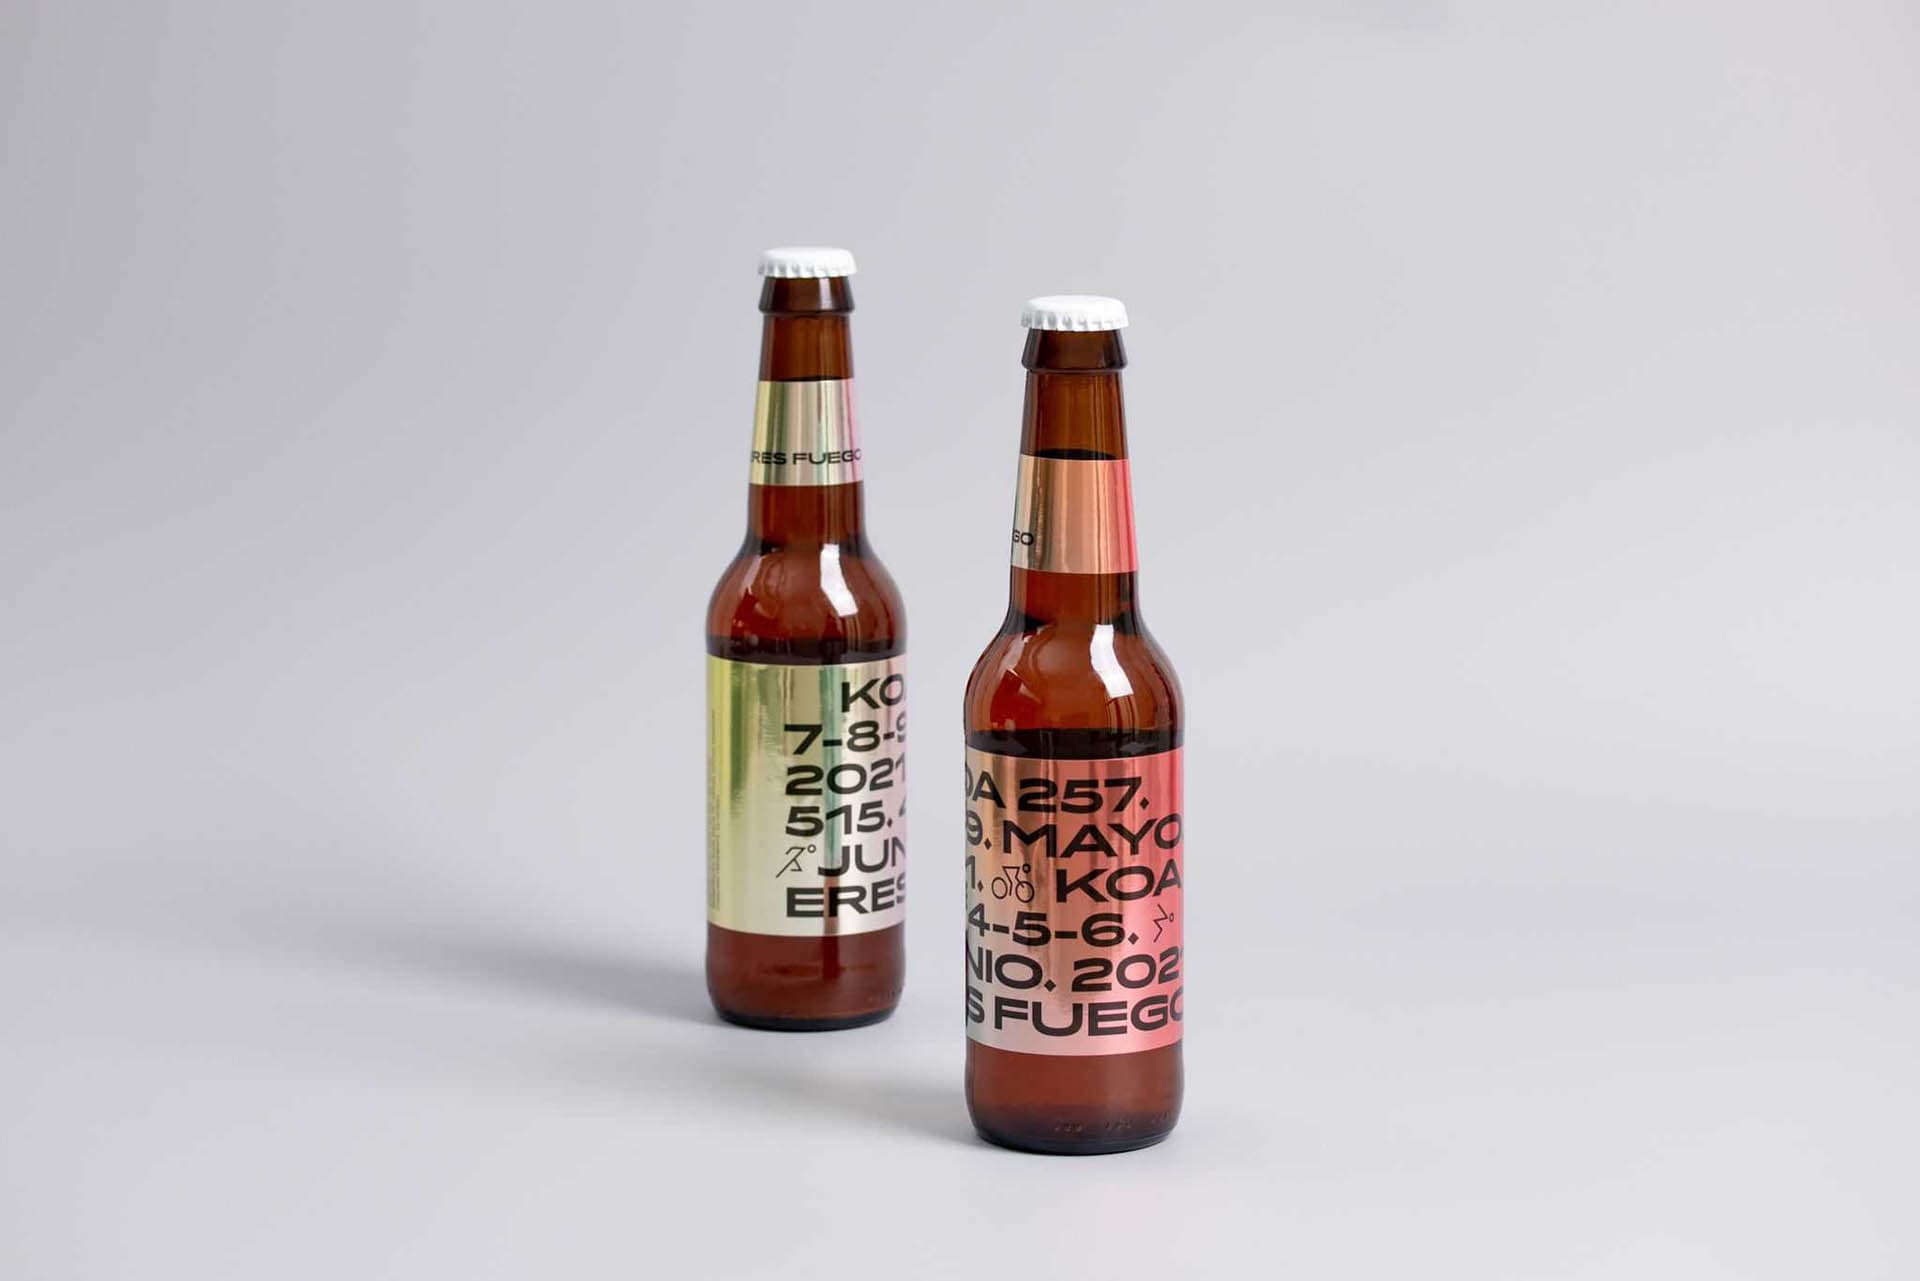 Diseño de packaging para cerveza y envase de café para KOA 2021